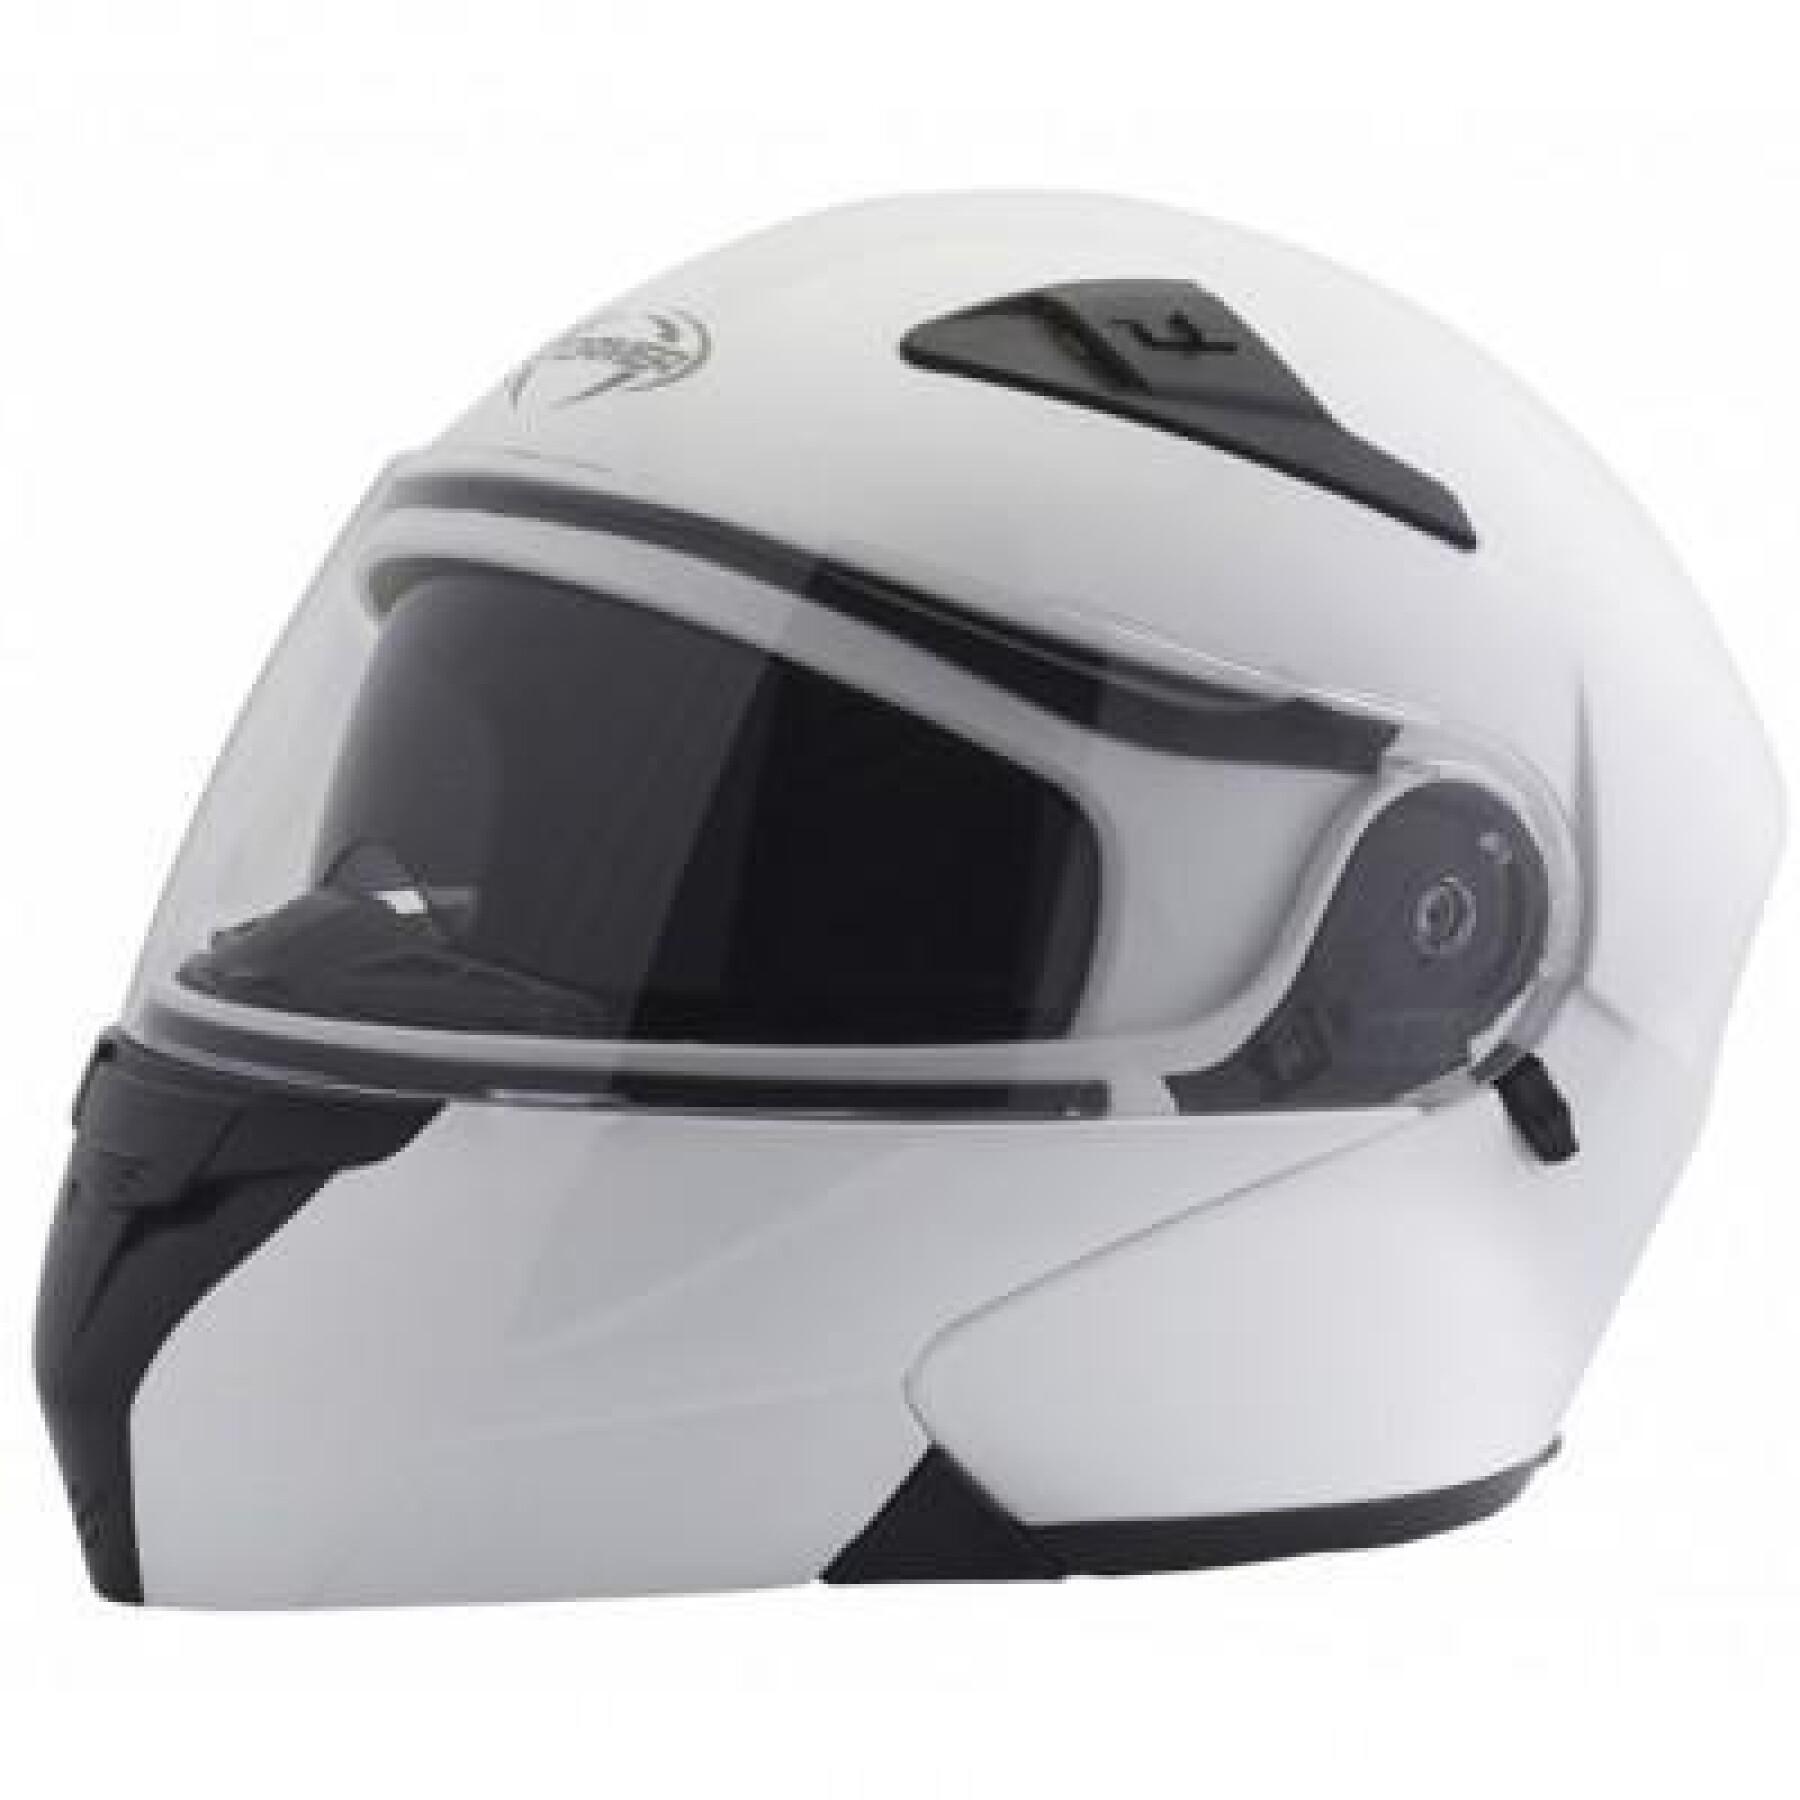 Modular motorcycle helmet Stormer Turn